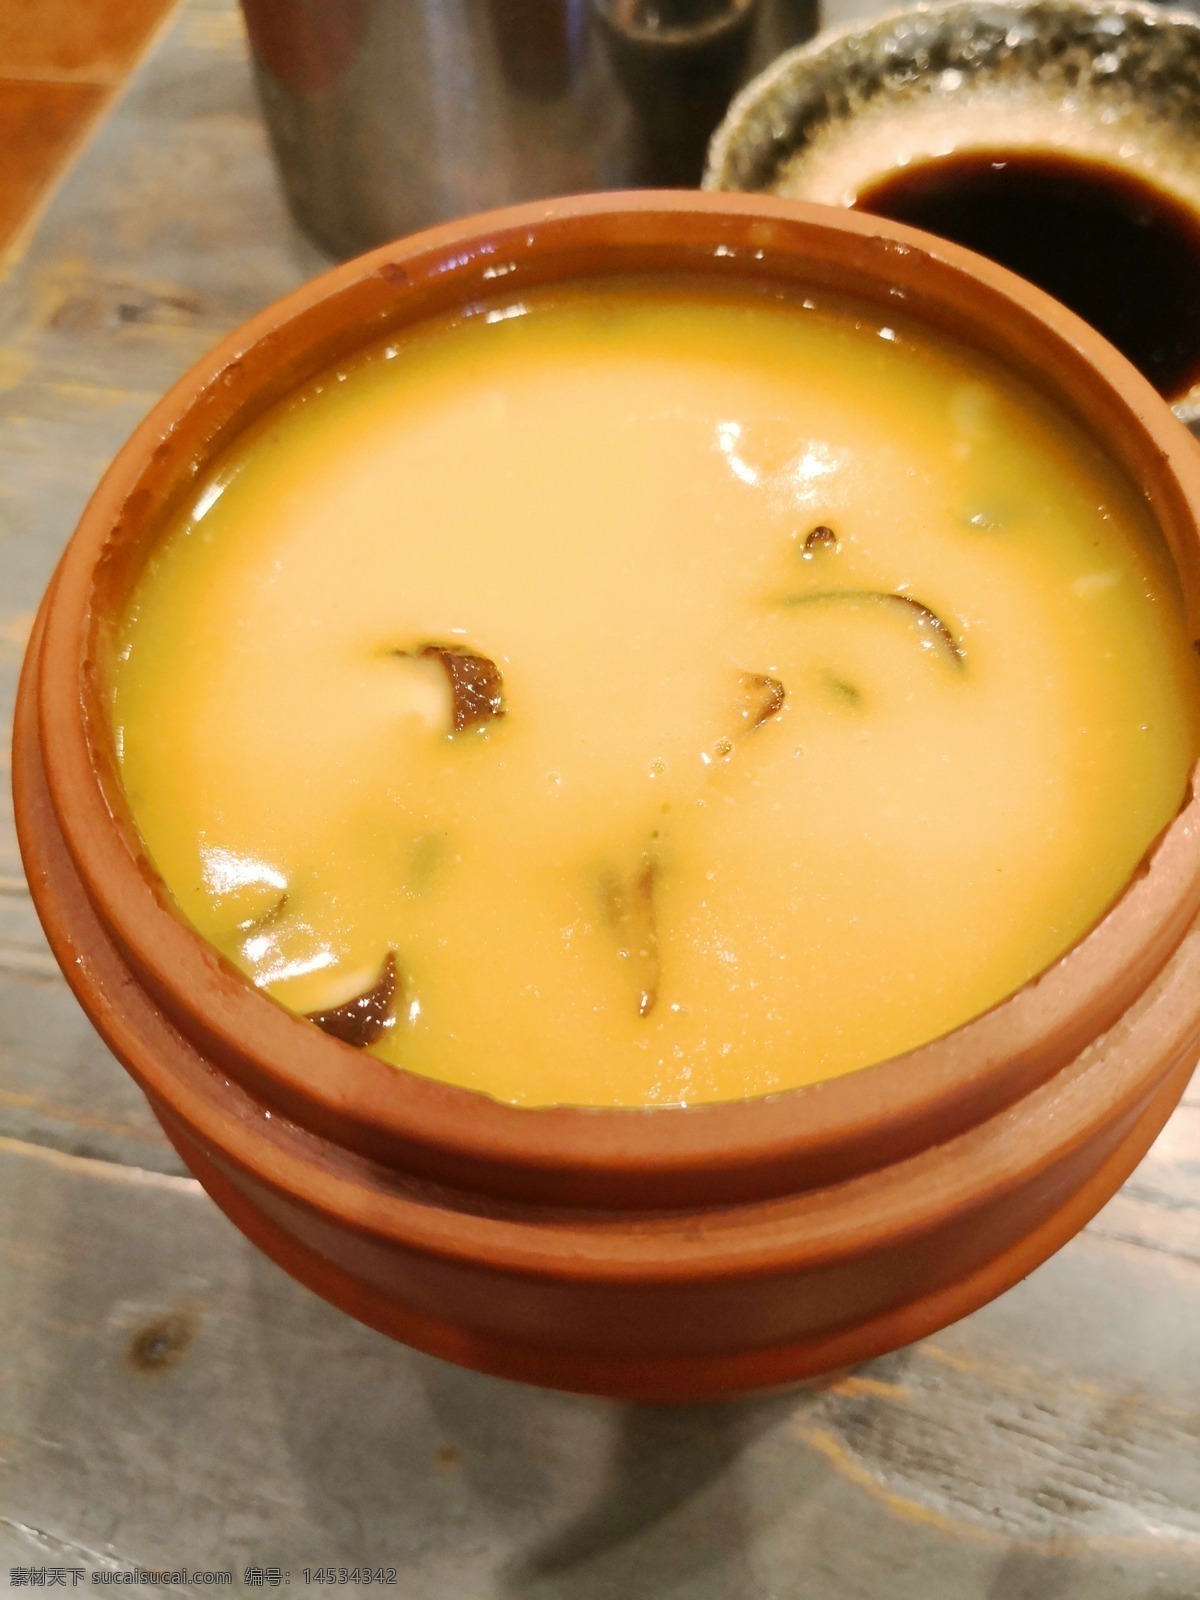 广东煲汤 煲汤 海鲜 菌菇煲汤 汤品 广东特色美食 餐饮美食 传统美食